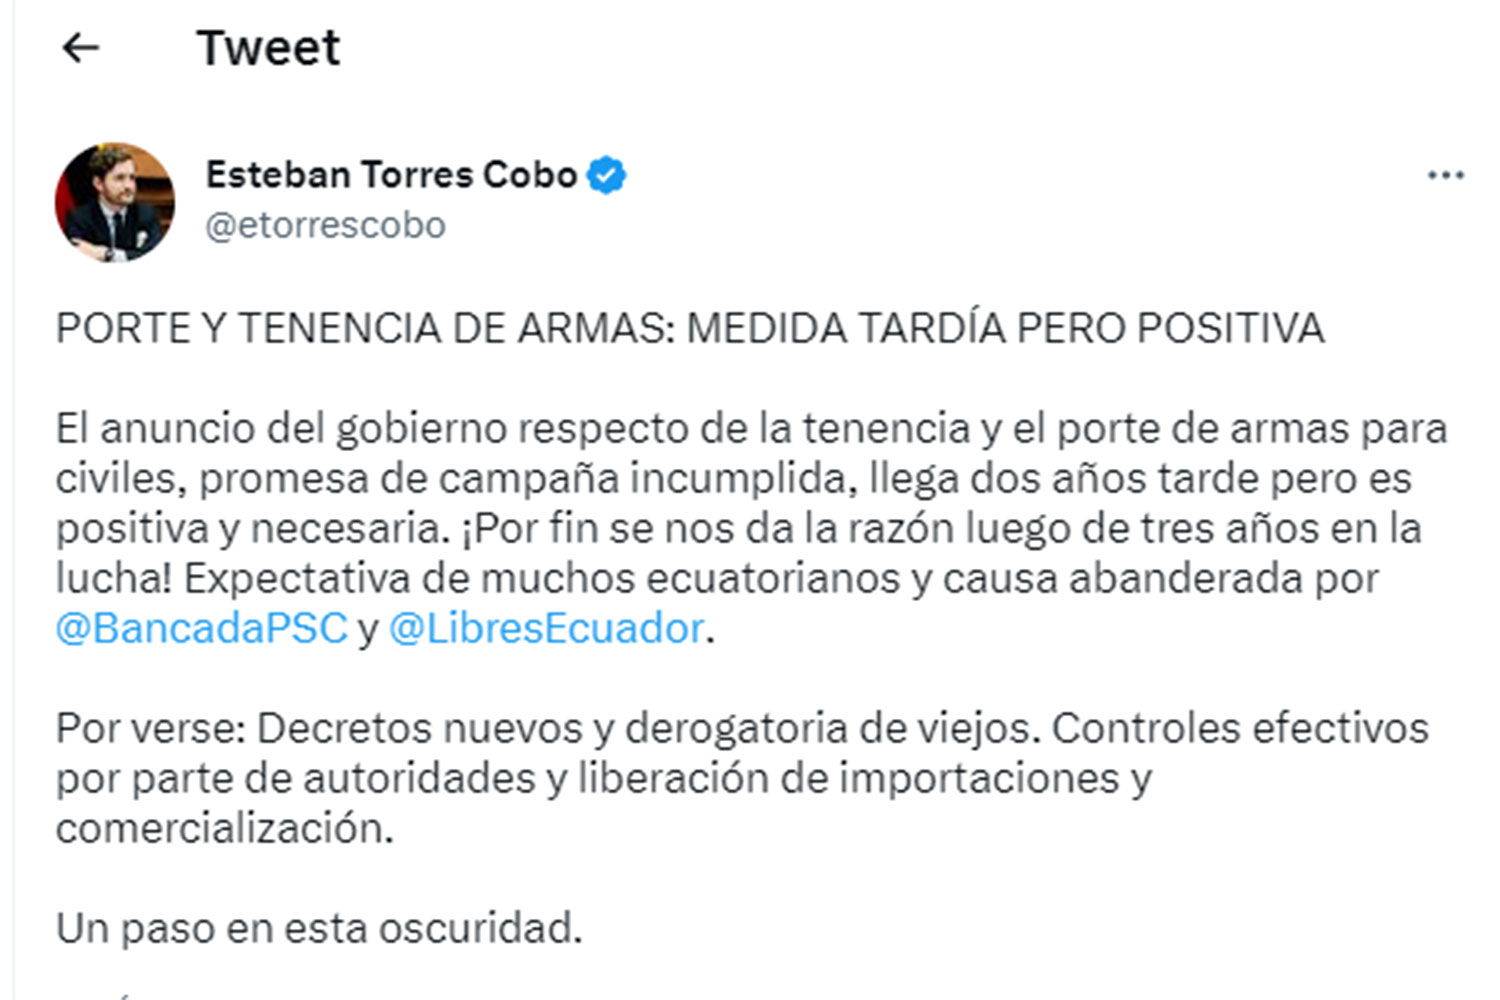 tuit de Esteban Torres Cobo, asambleísta de Ecuador